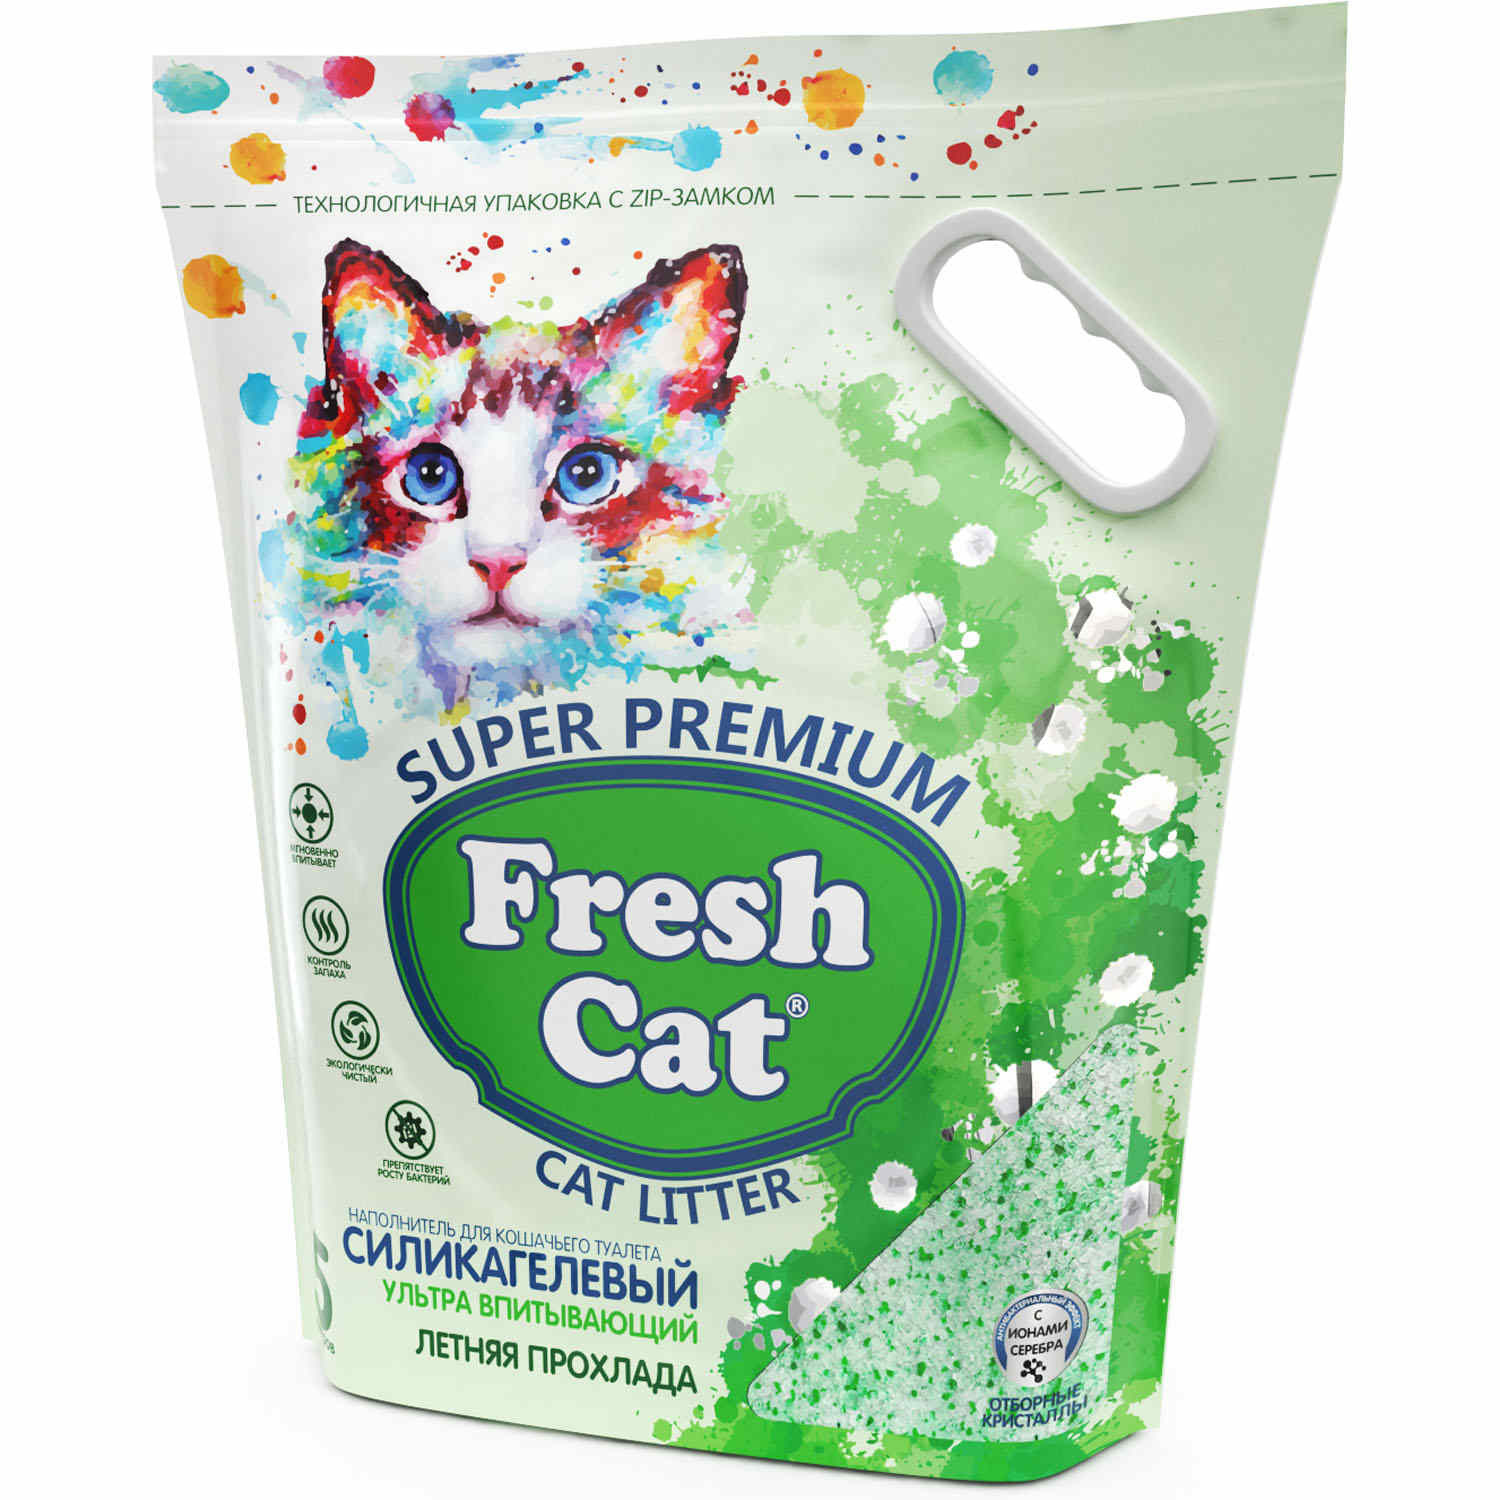 Fresh cat Fresh cat впитывающий силикагелевый наполнитель с ароматом Летняя прохлада, 5л (2 кг) цена и фото